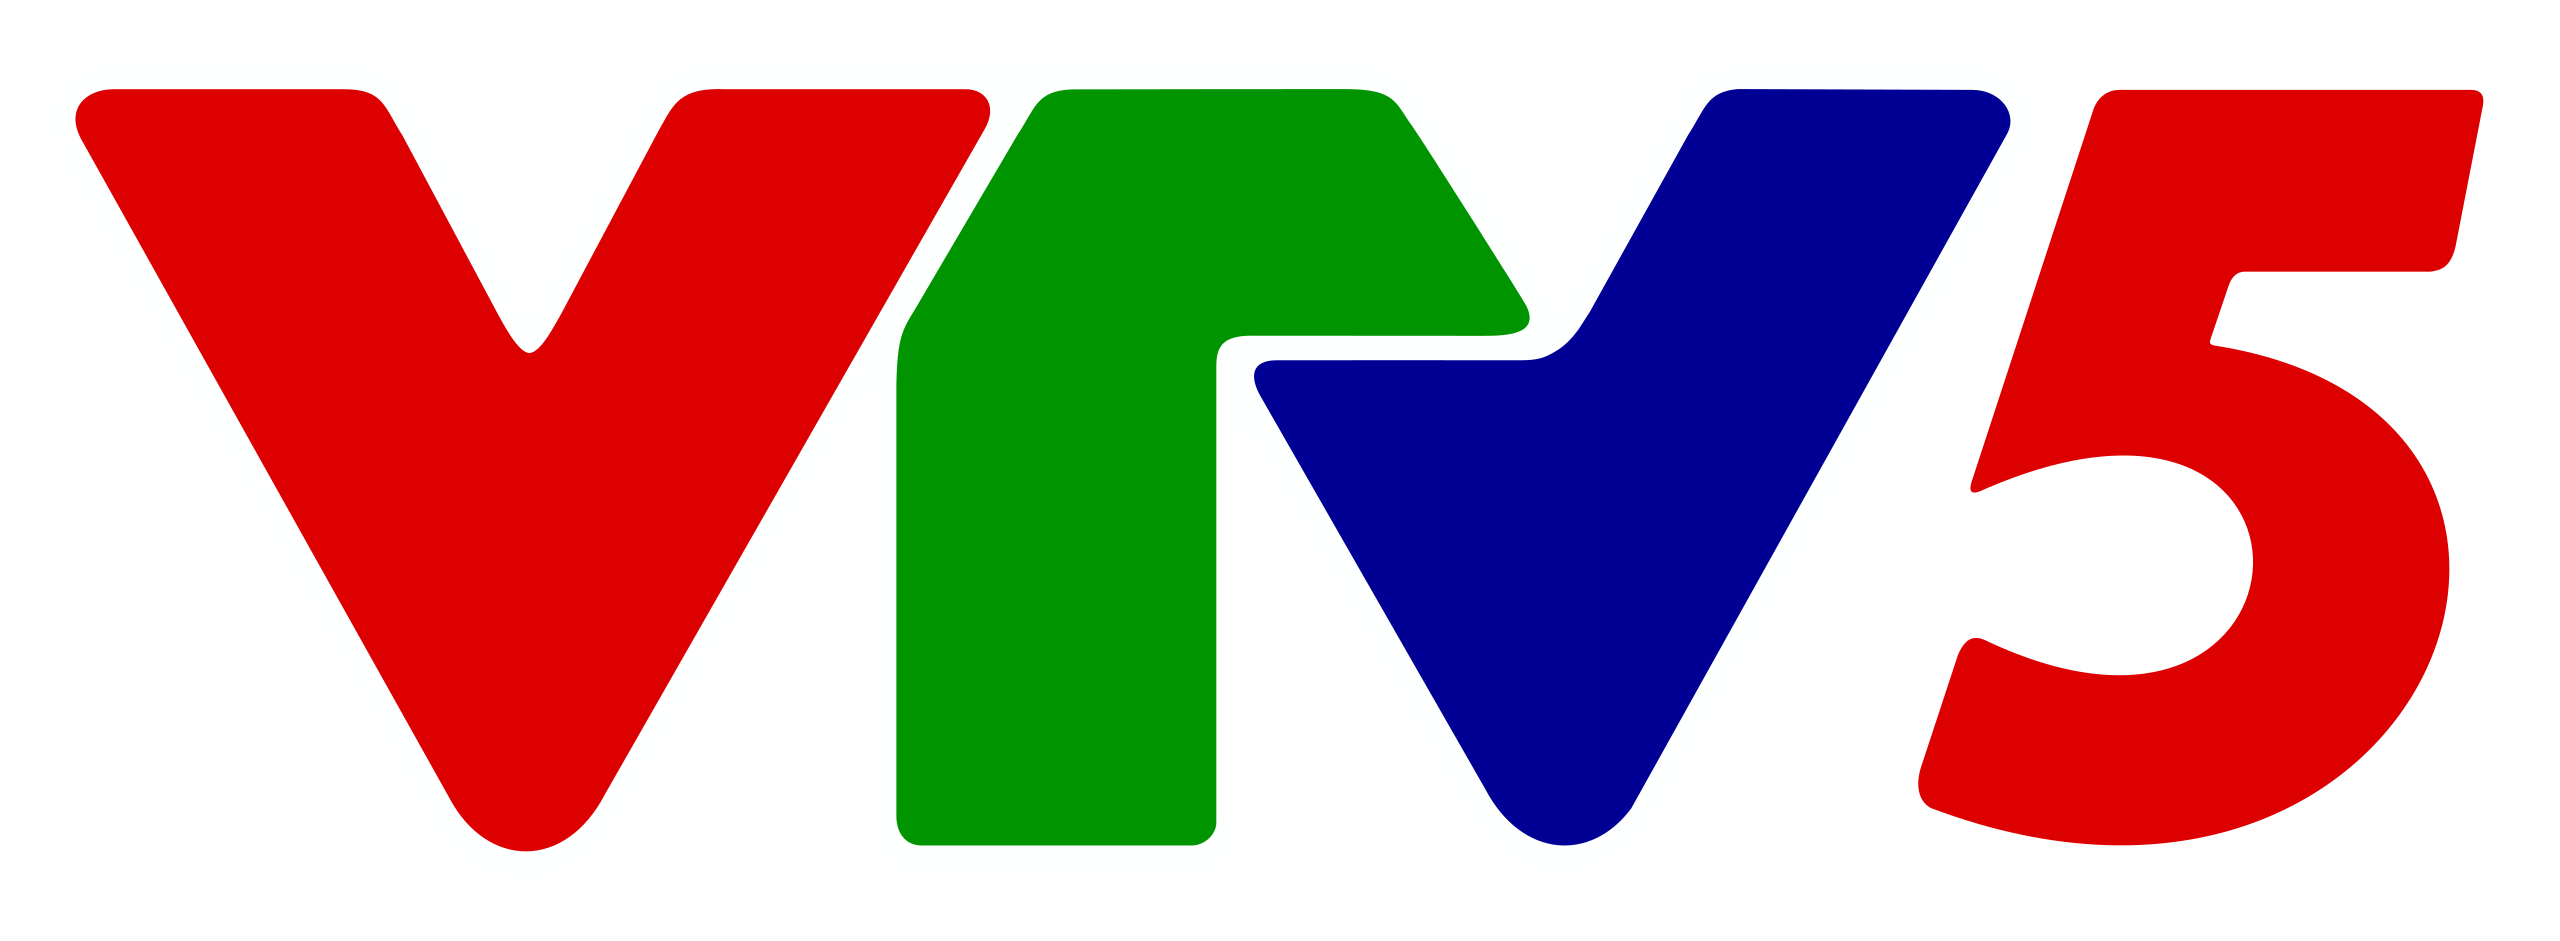 VN: VTV5 HD